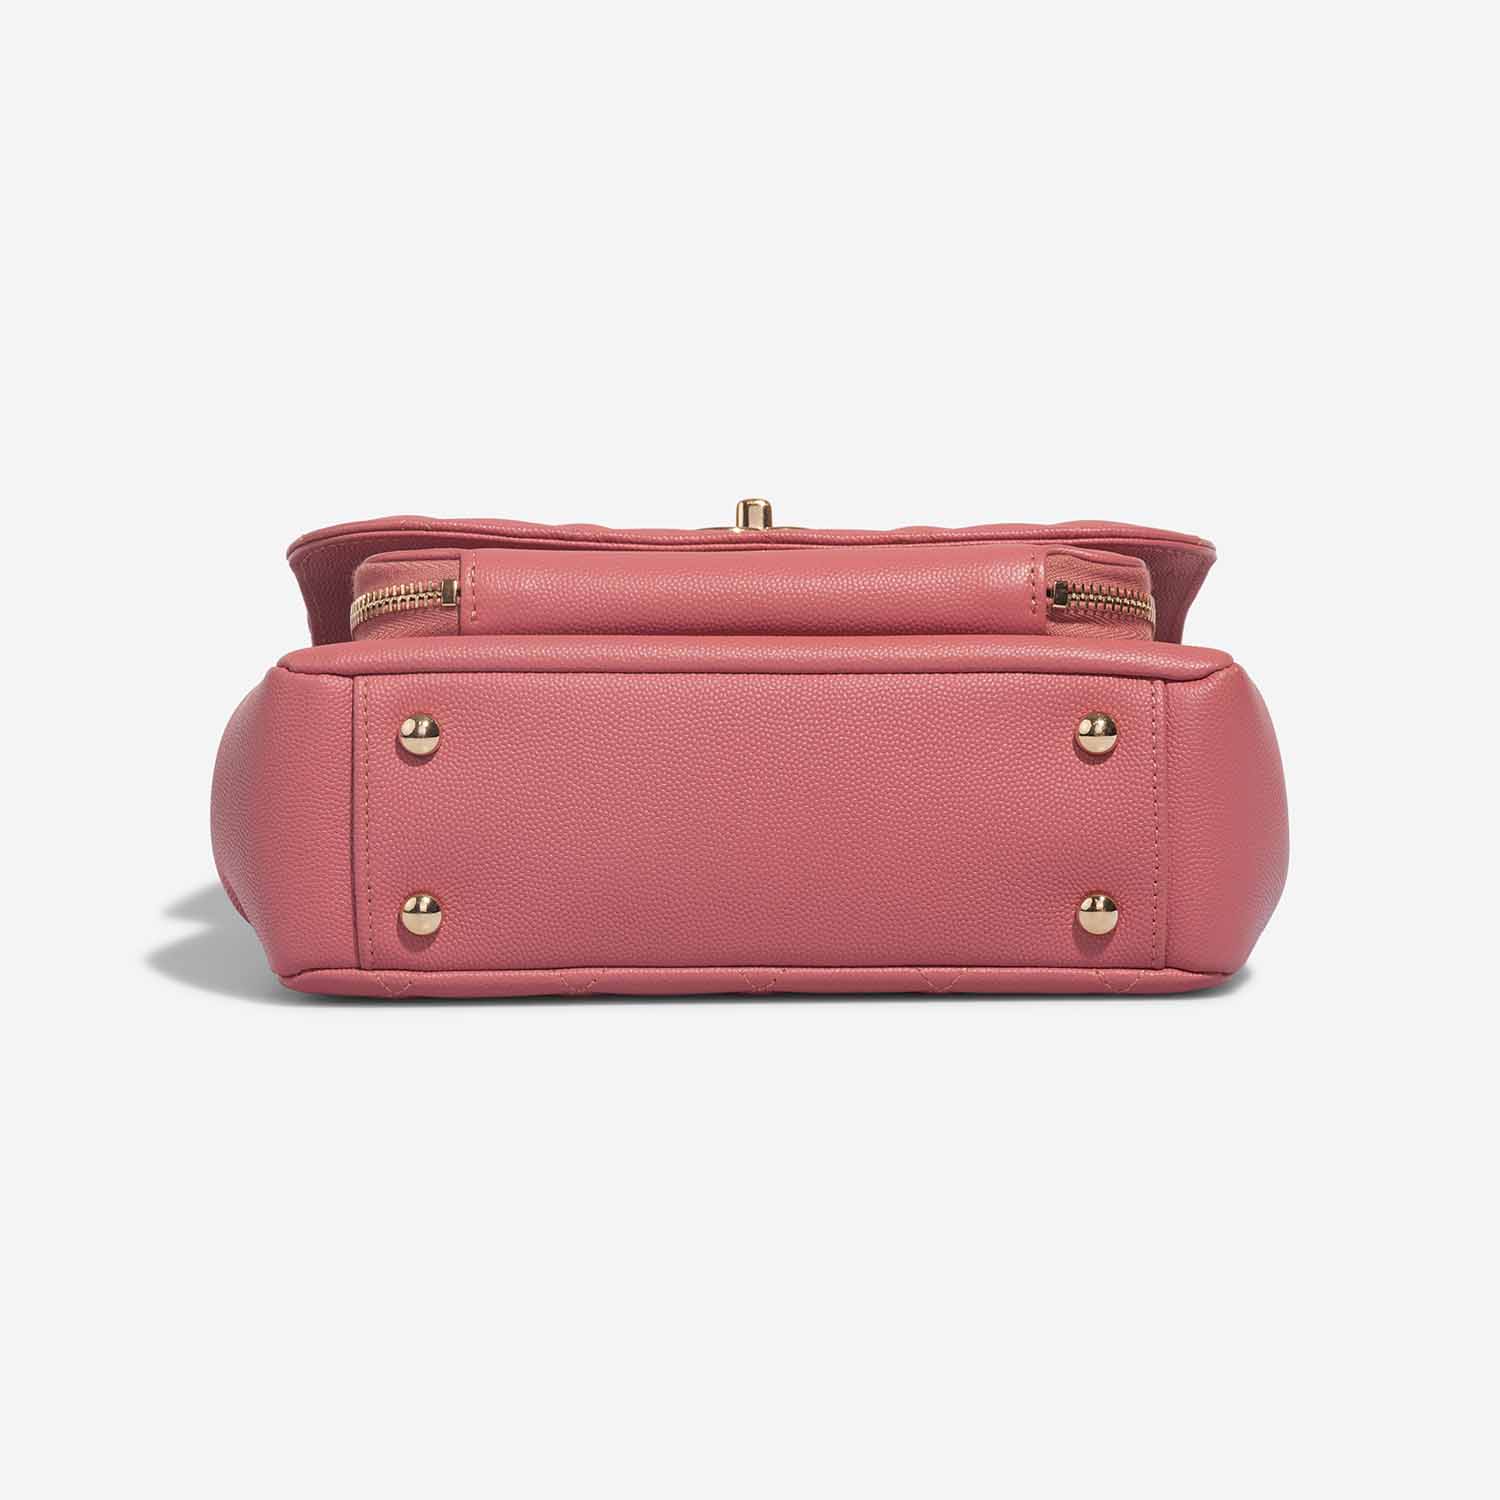 Chanel Business Affinity Medium Coral Pink Bottom | Verkaufen Sie Ihre Designer-Tasche auf Saclab.com